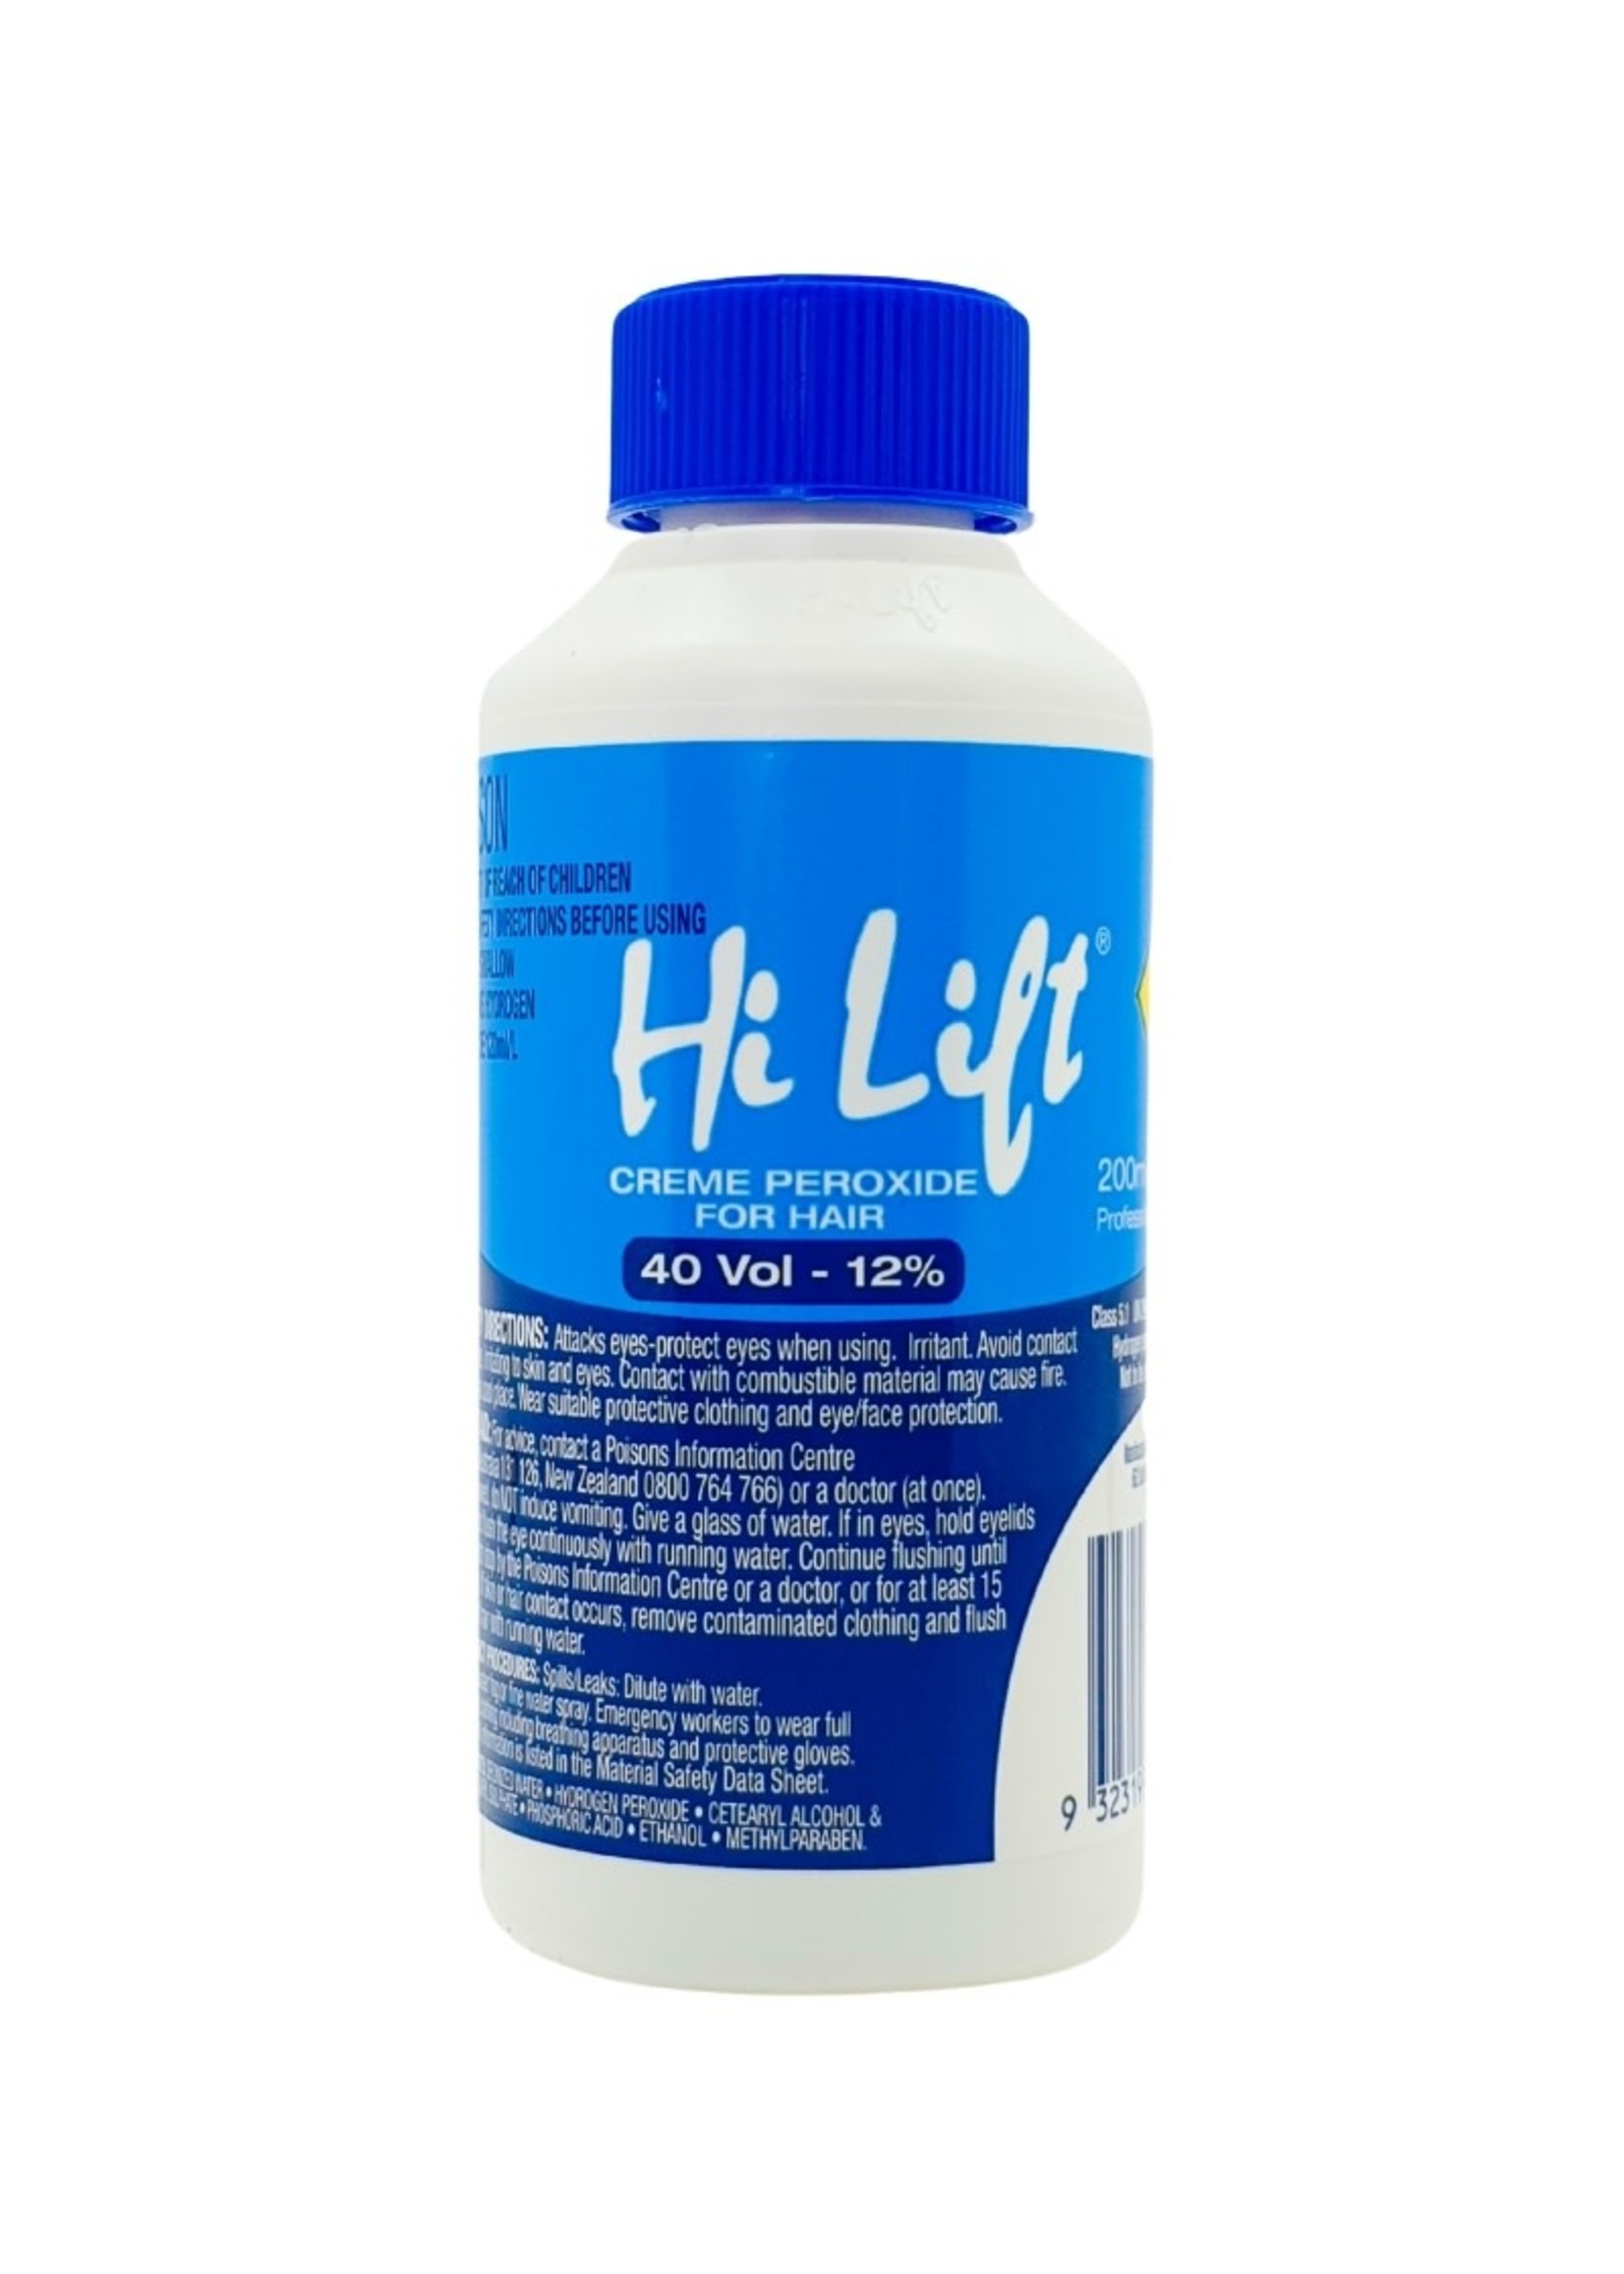 Hi Lift Hi Lift Creme Peroxide 40 Vol (12%) 200ml